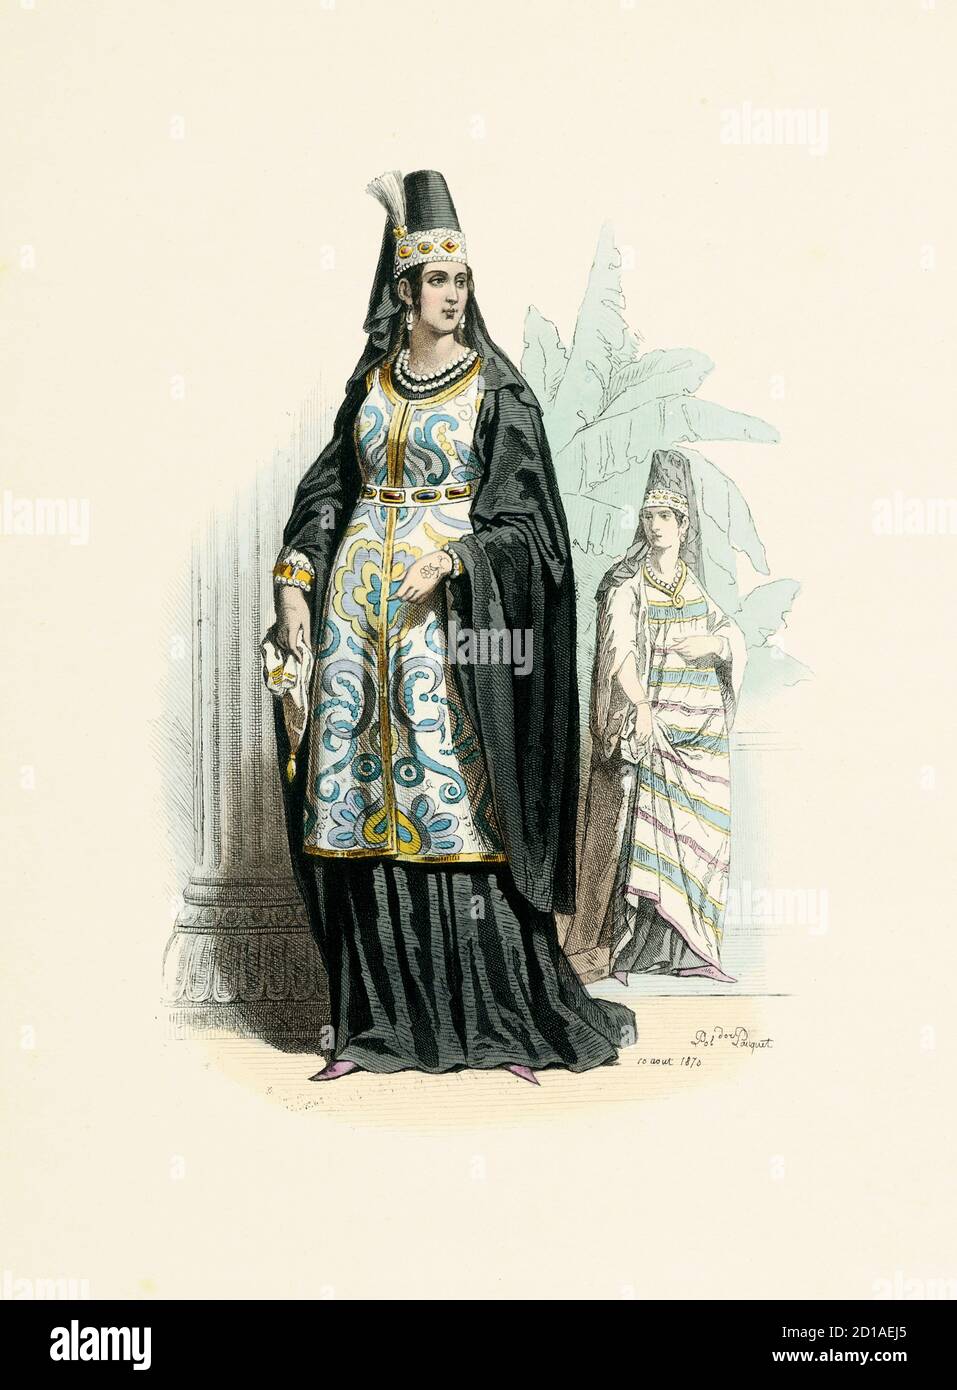 Porträt der arabischen Frau 1782, handkolorierter Stich von H. Pauquet. Veröffentlicht im Buch Modes et Costumes Historiques Dessines et Graves par Stockfoto